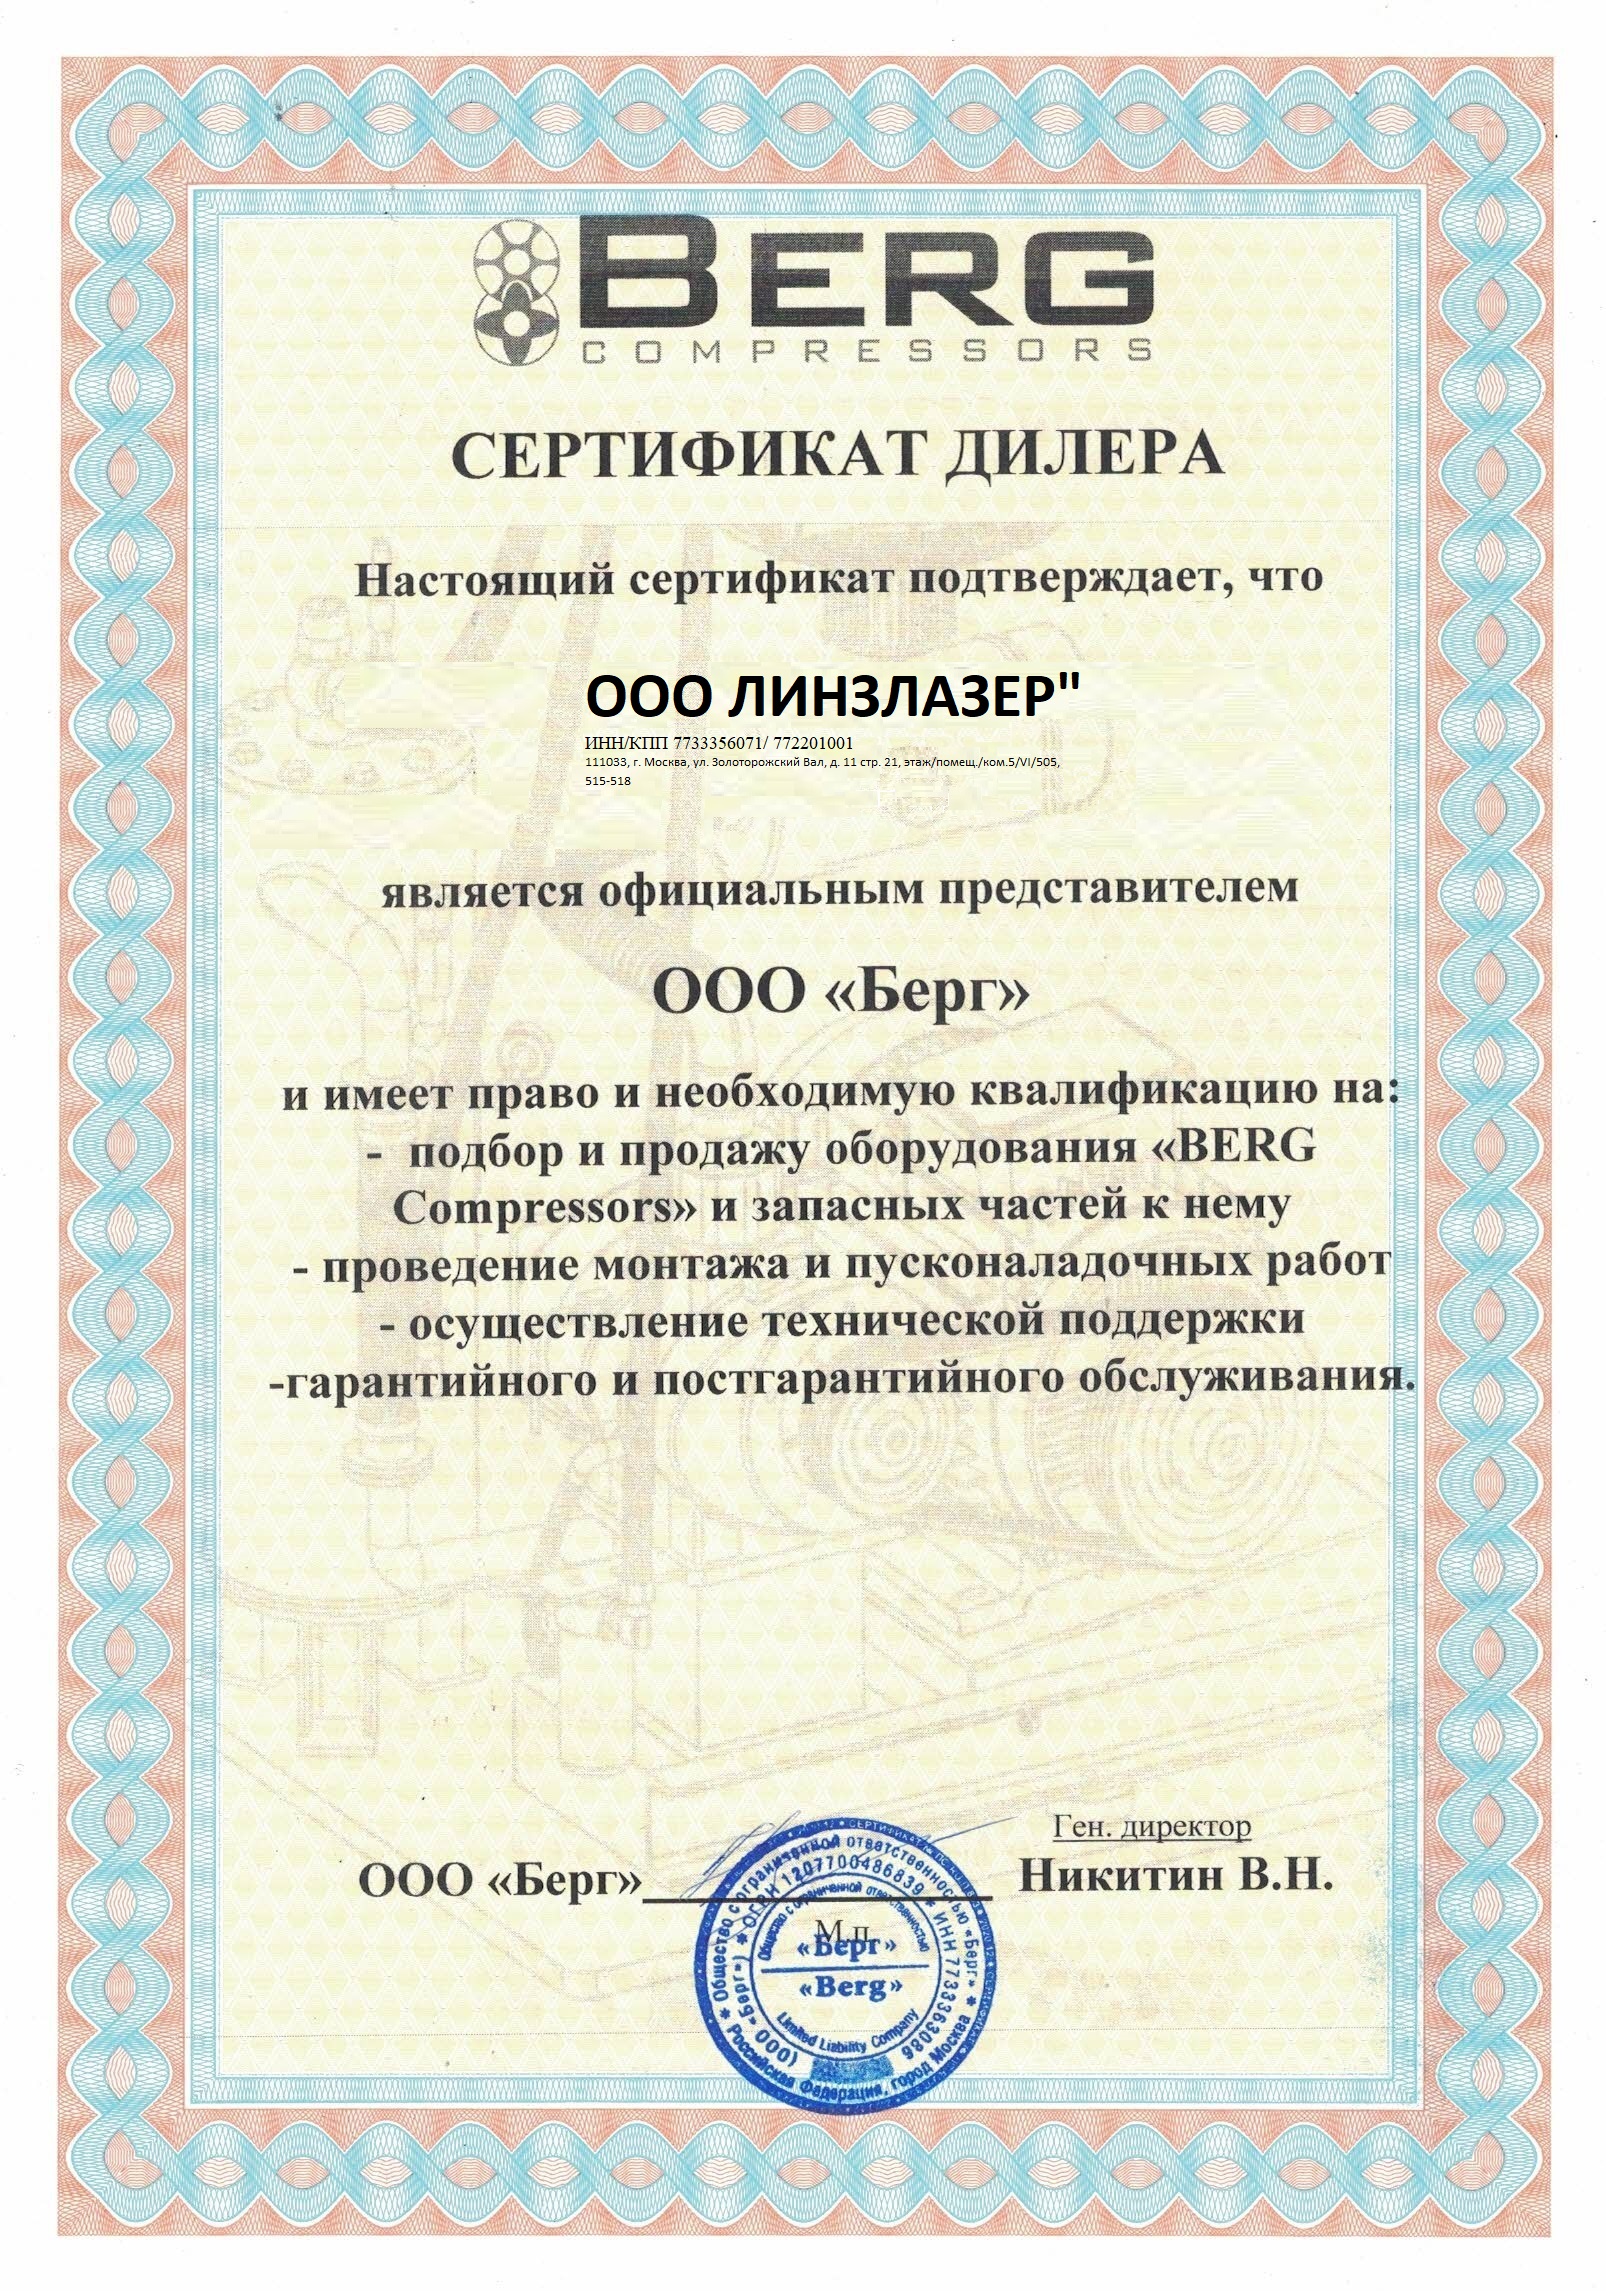 Сертификат дилера ООО "Берг"